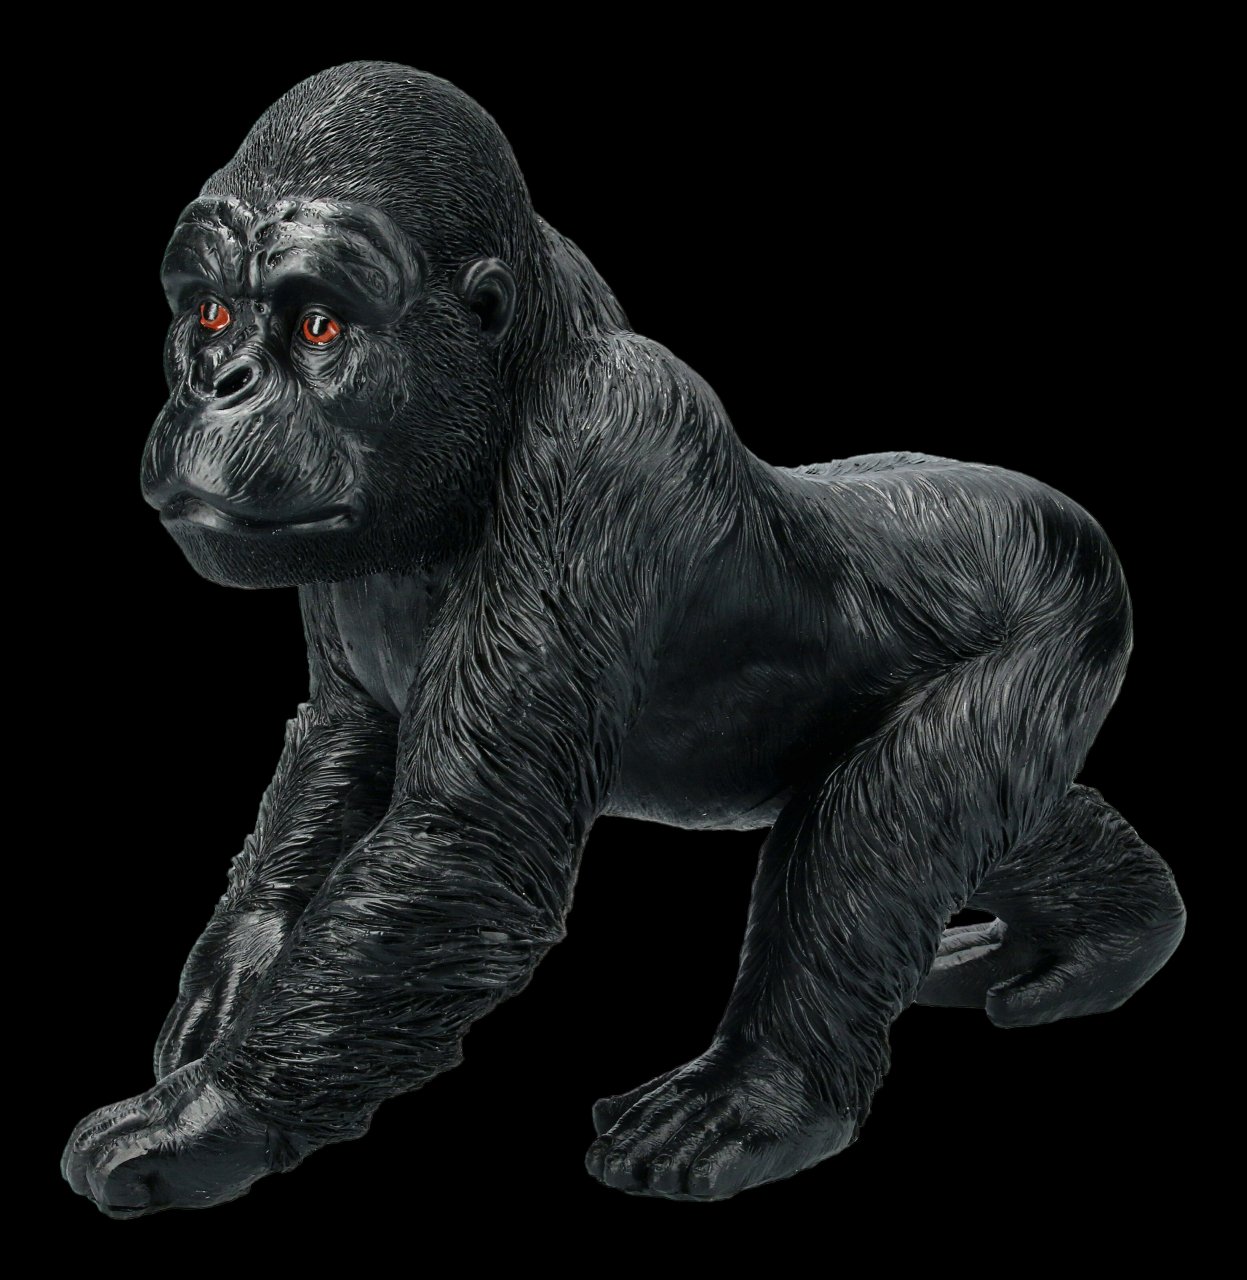 Garden Figurine - Running Gorilla